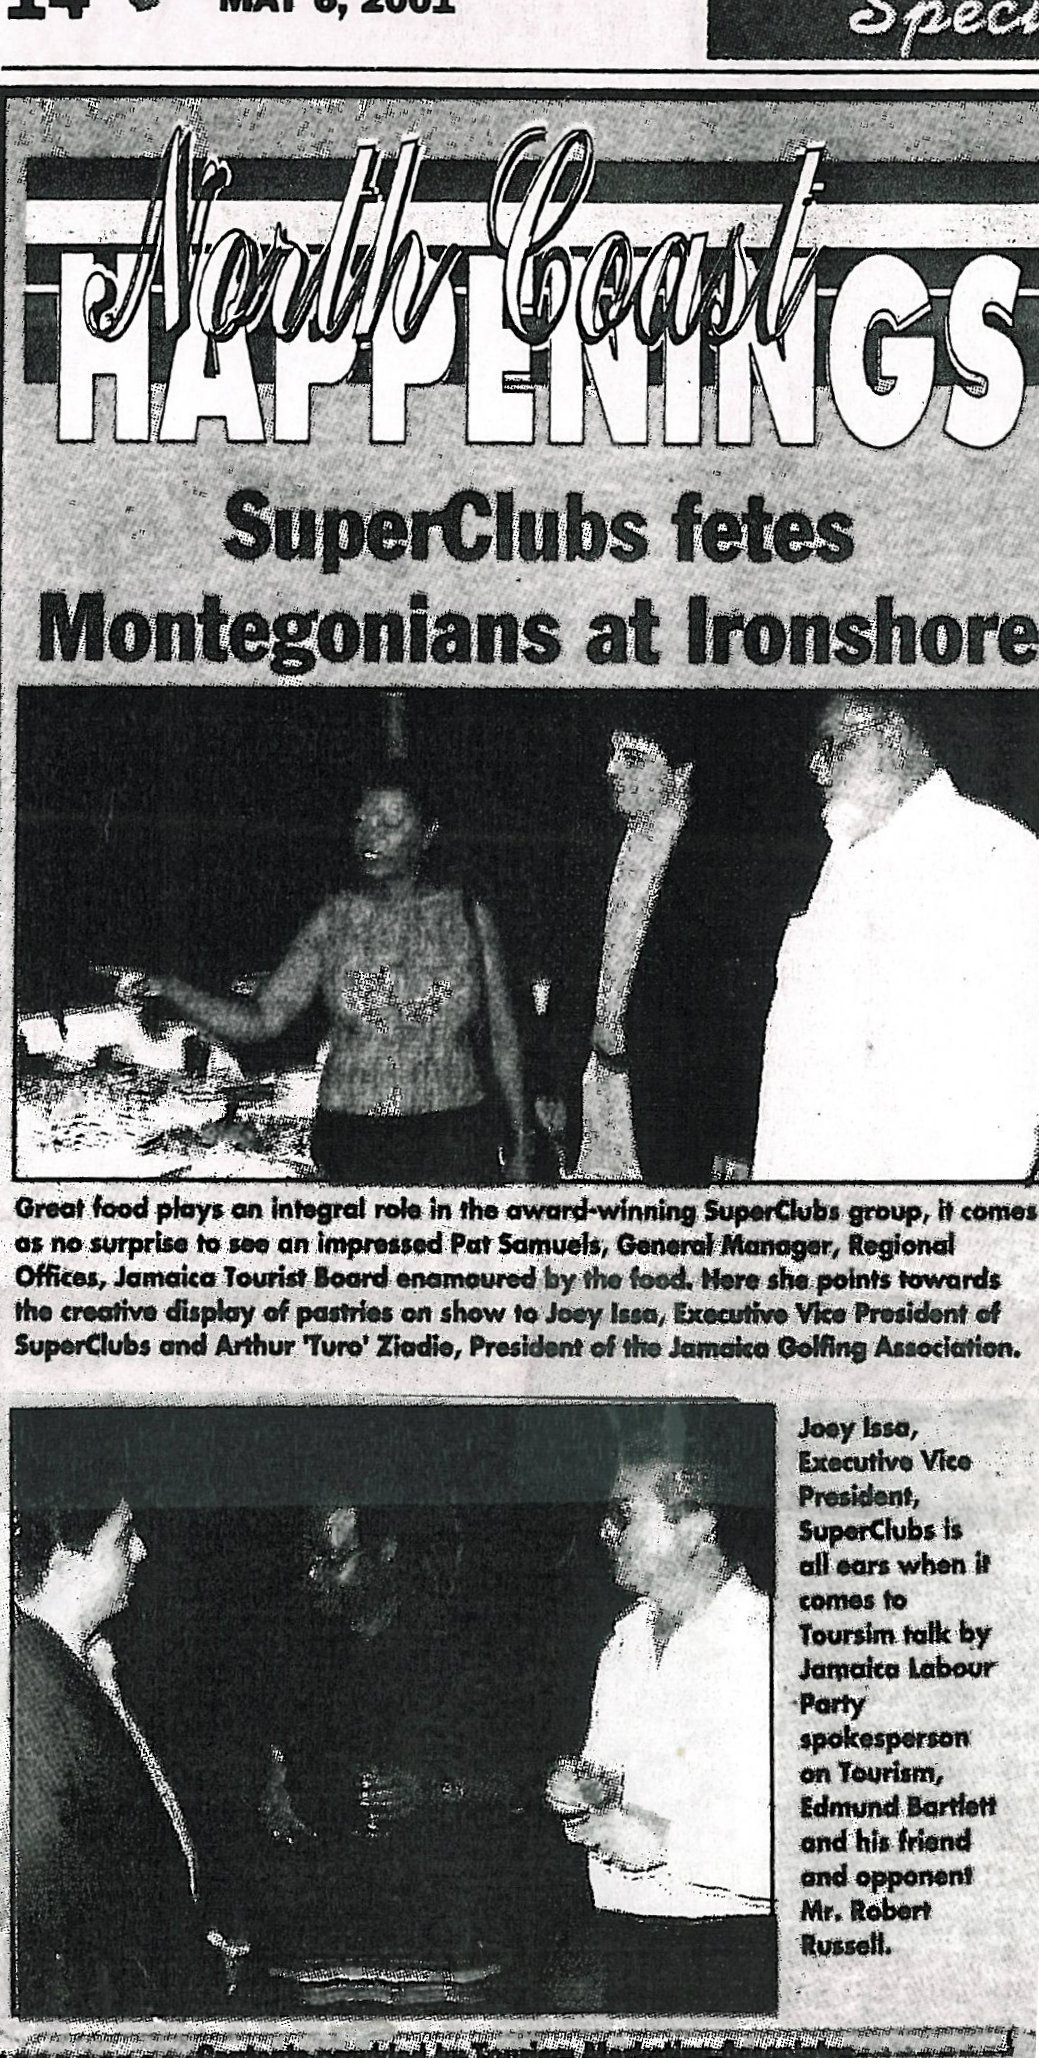 SuperClubs fete Montegonians at Ironshore